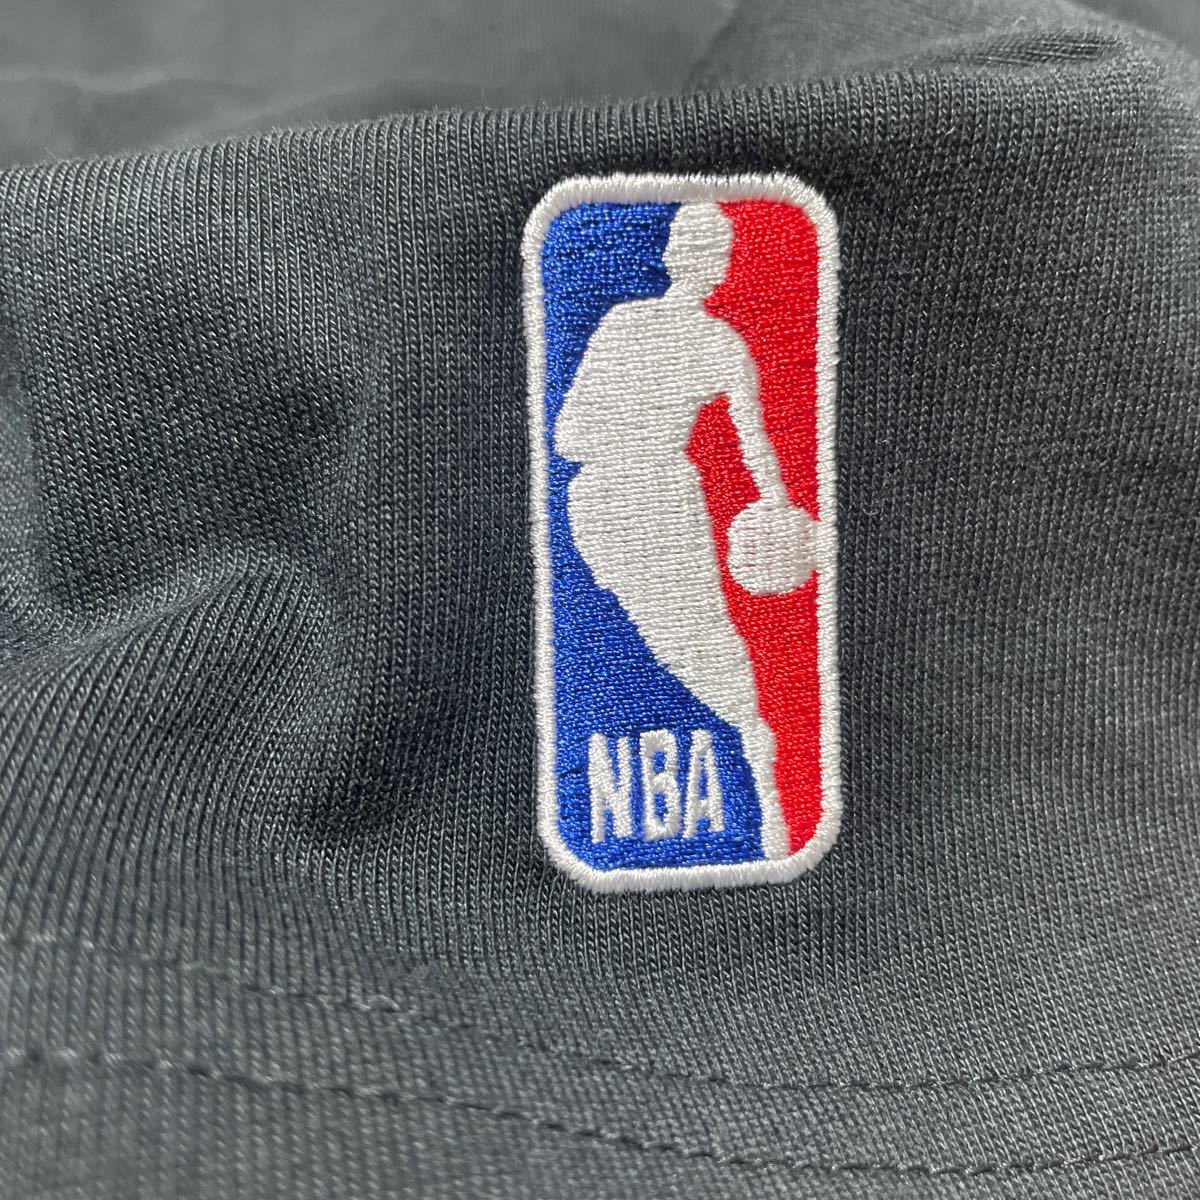 未使用 タグ付き KITH Nike NBA New York Knicks NYC ナイキ キス ニックス 長袖 Tシャツ ロンT 3XL XXXL XL ビッグサイズ 大きいサイズ_画像6